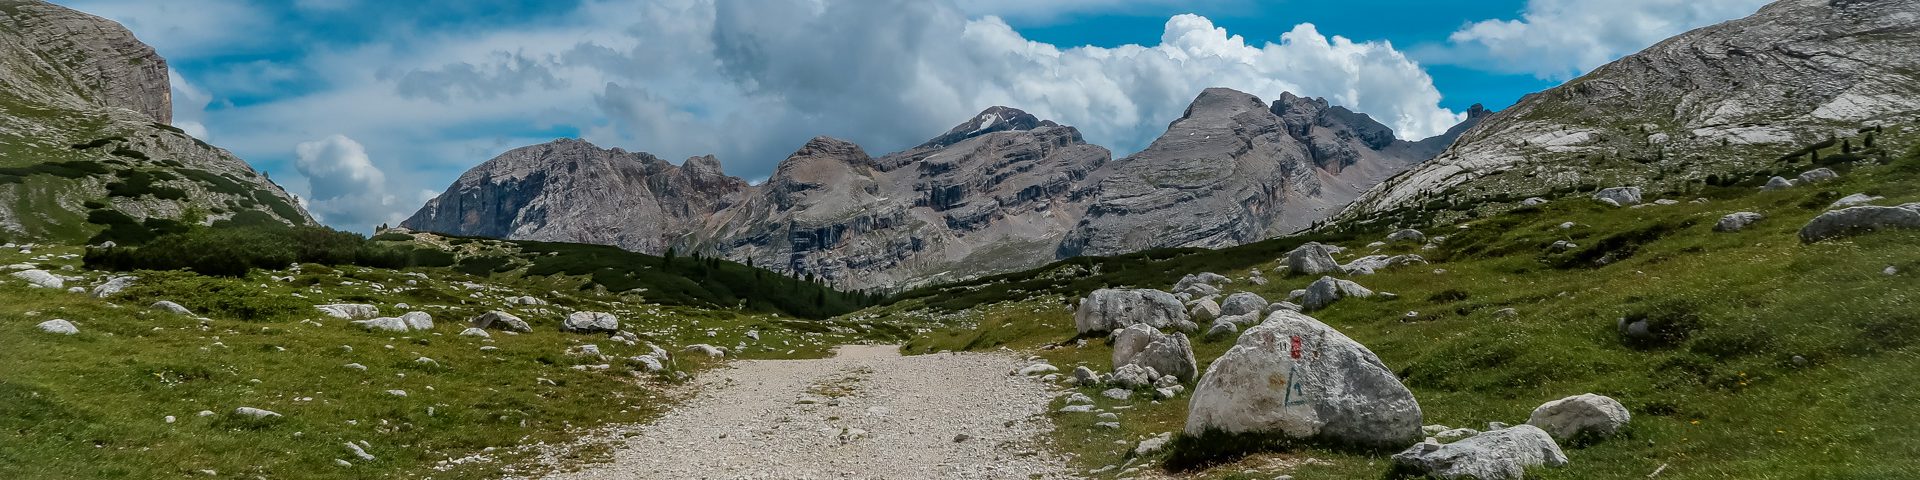 Mountainbike Touren über die Alpen